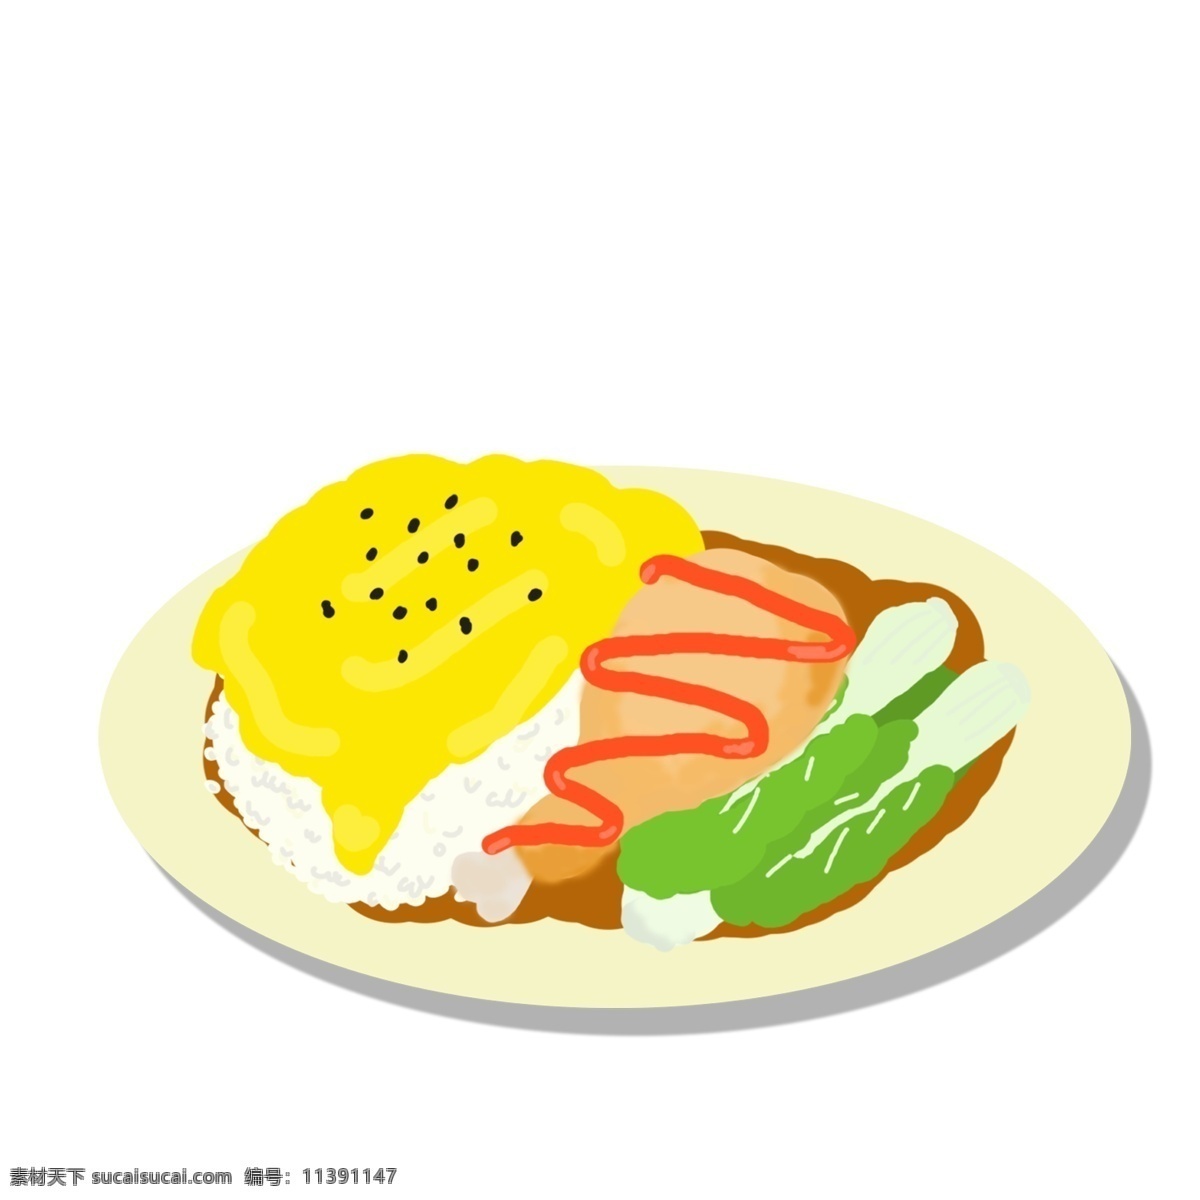 美味 手绘 食物 装饰 元素 早餐 晚餐 中餐 鸡蛋 蔬菜 装饰元素